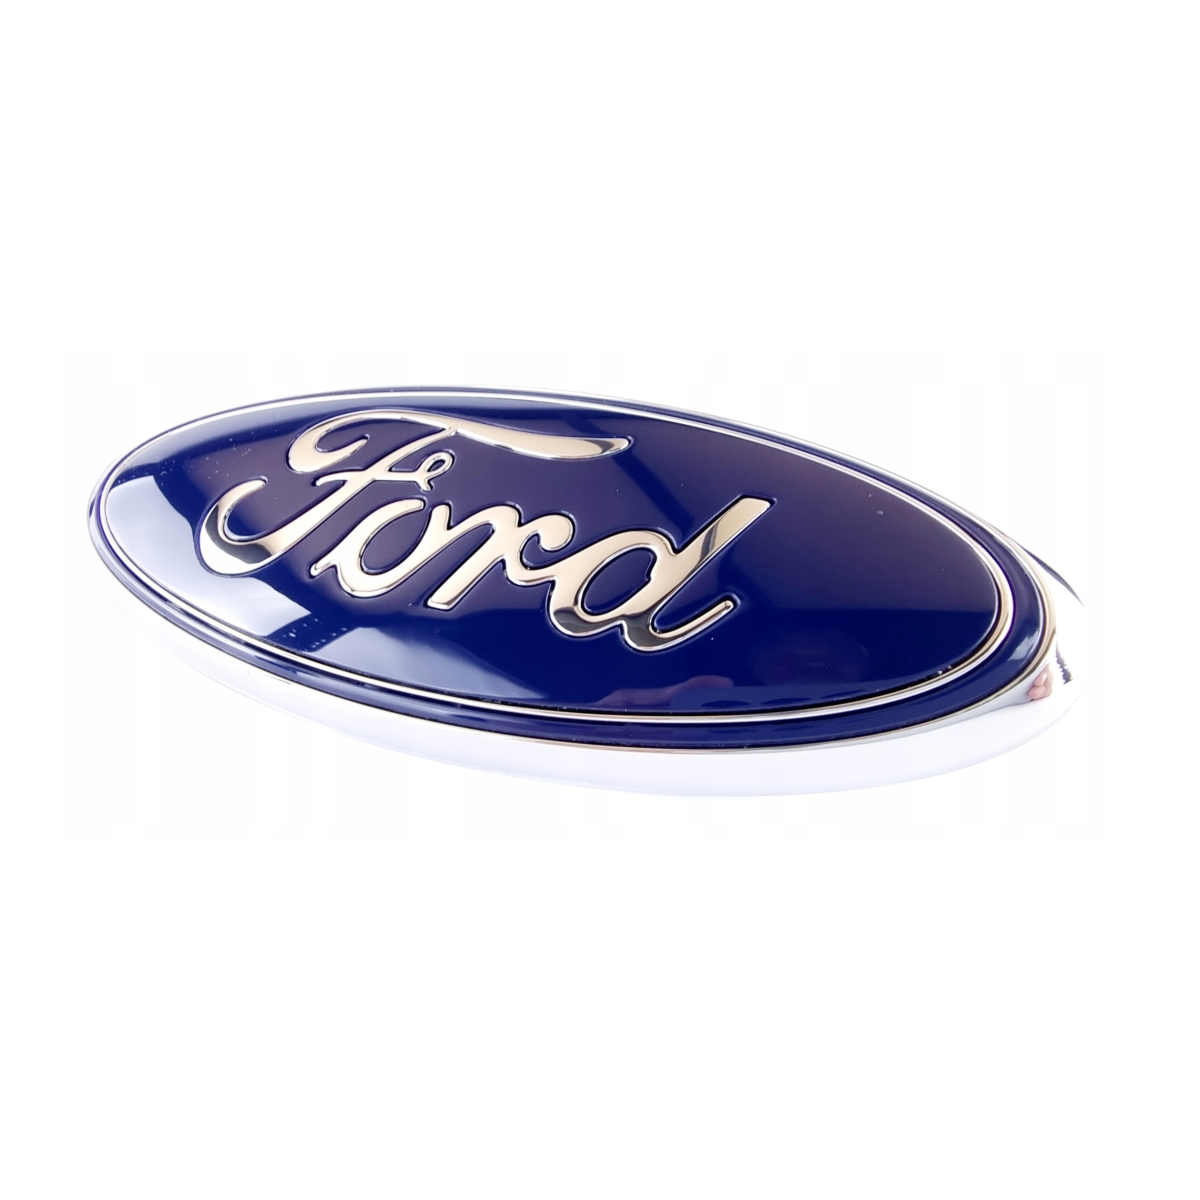 Emblema "Ford" Grade Radiador Ecosport 2017/ GN158B262AA